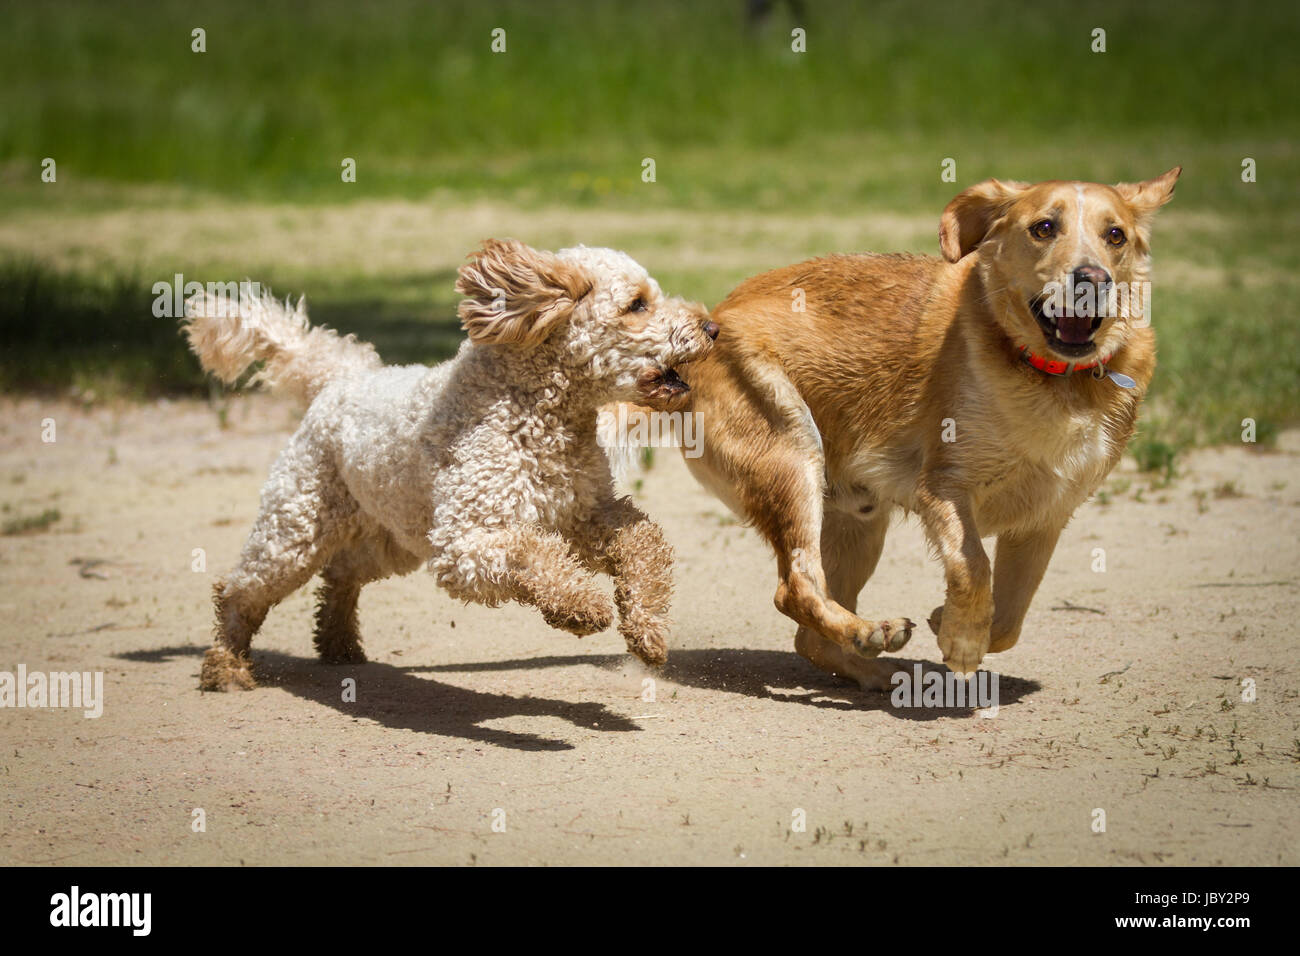 Ein Labradoodle und ein Labrador rennen gemeinsam durch den Sand und jagen sich gegenseitig. Stock Photo